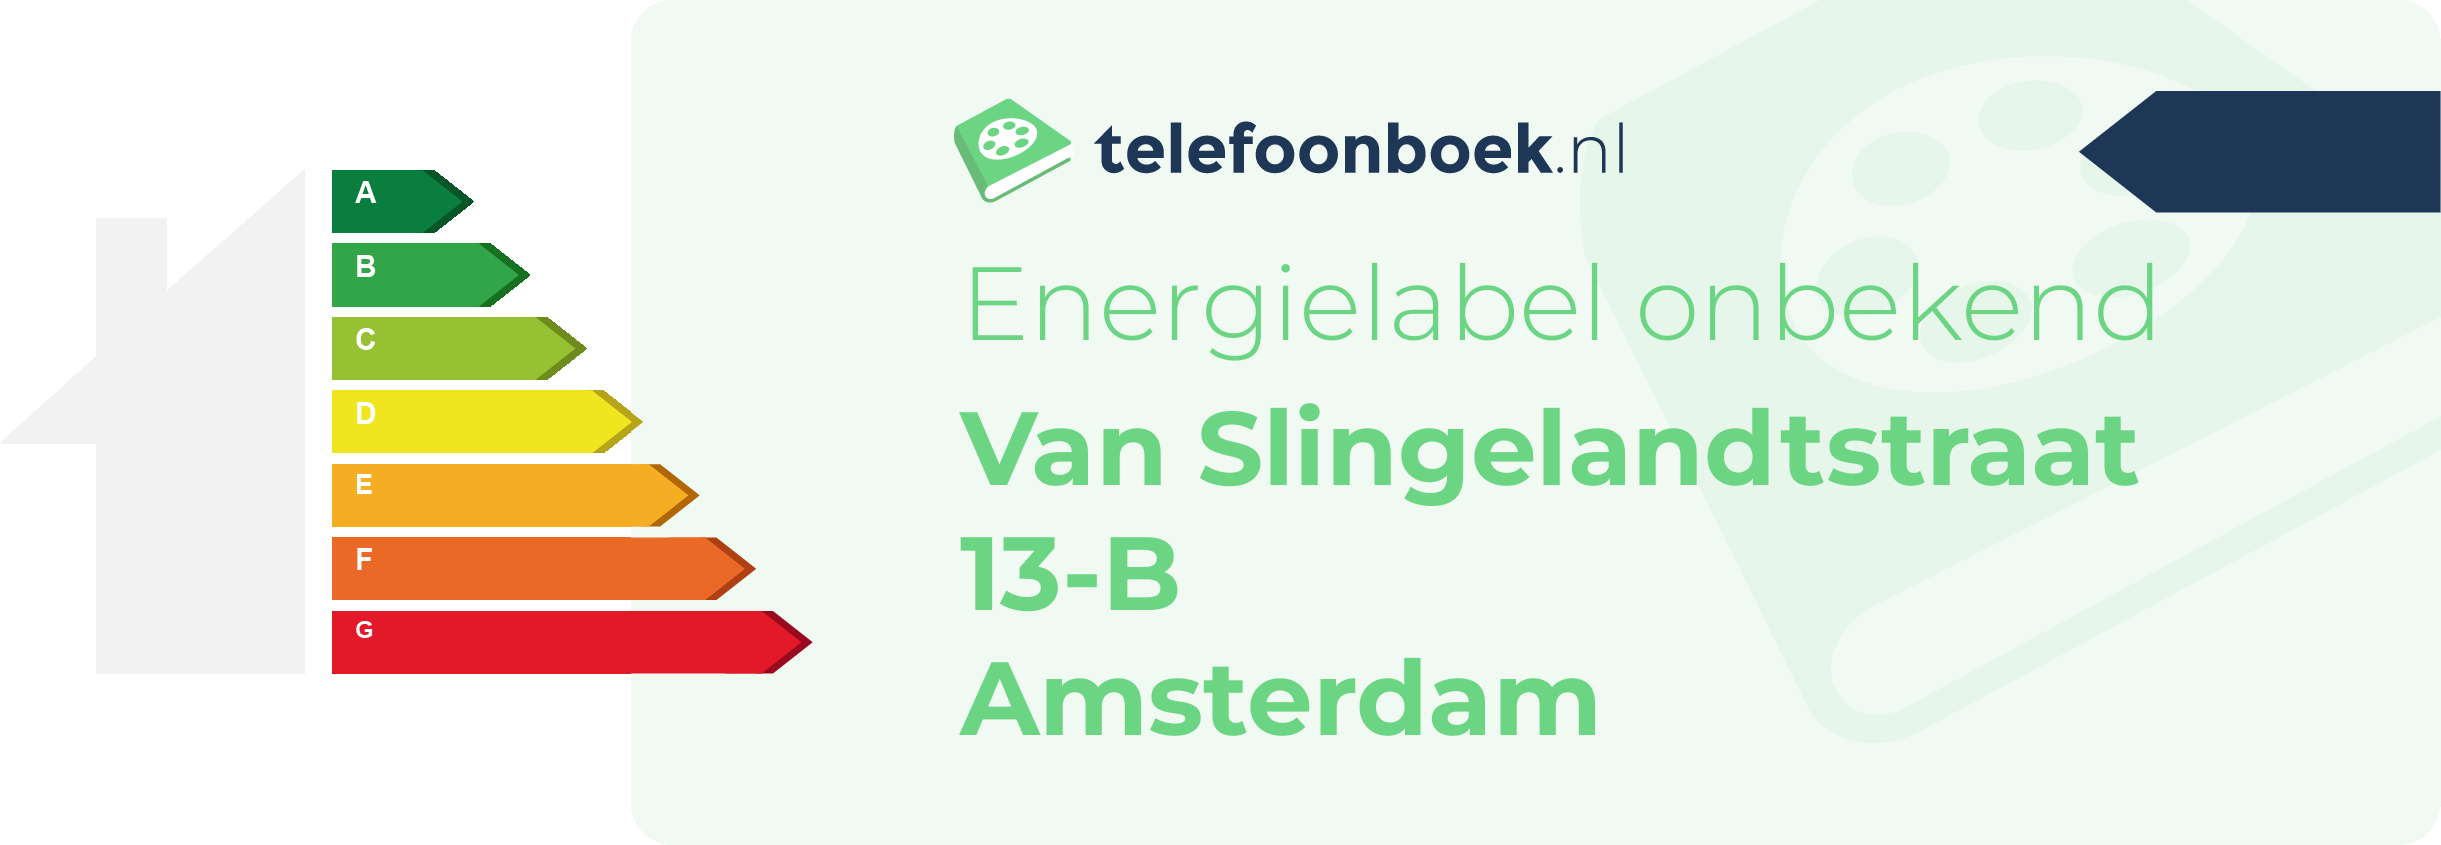 Energielabel Van Slingelandtstraat 13-B Amsterdam